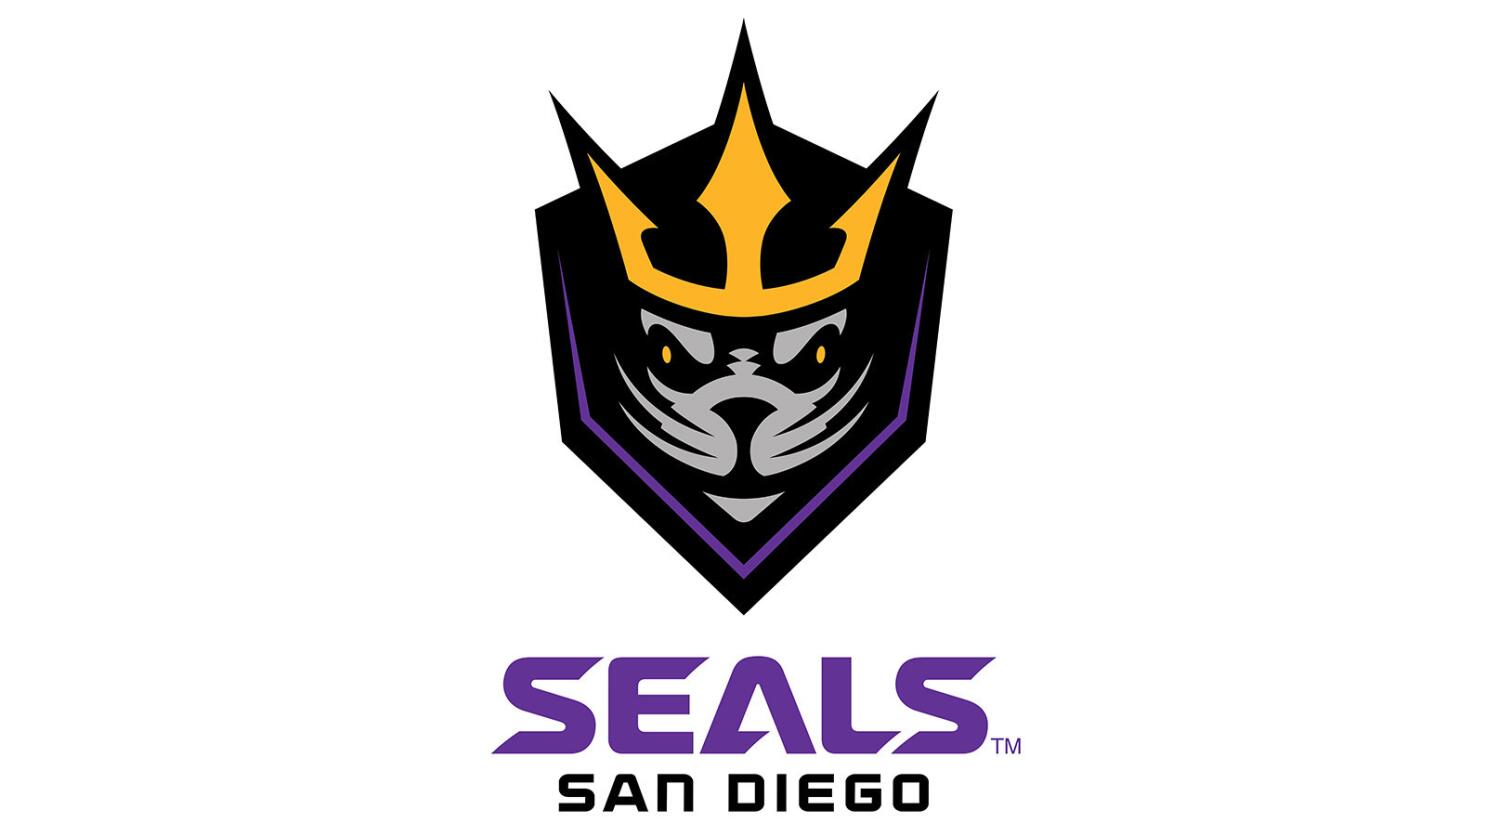 A LAX San Diego team name: Seals - The San Diego Union-Tribune